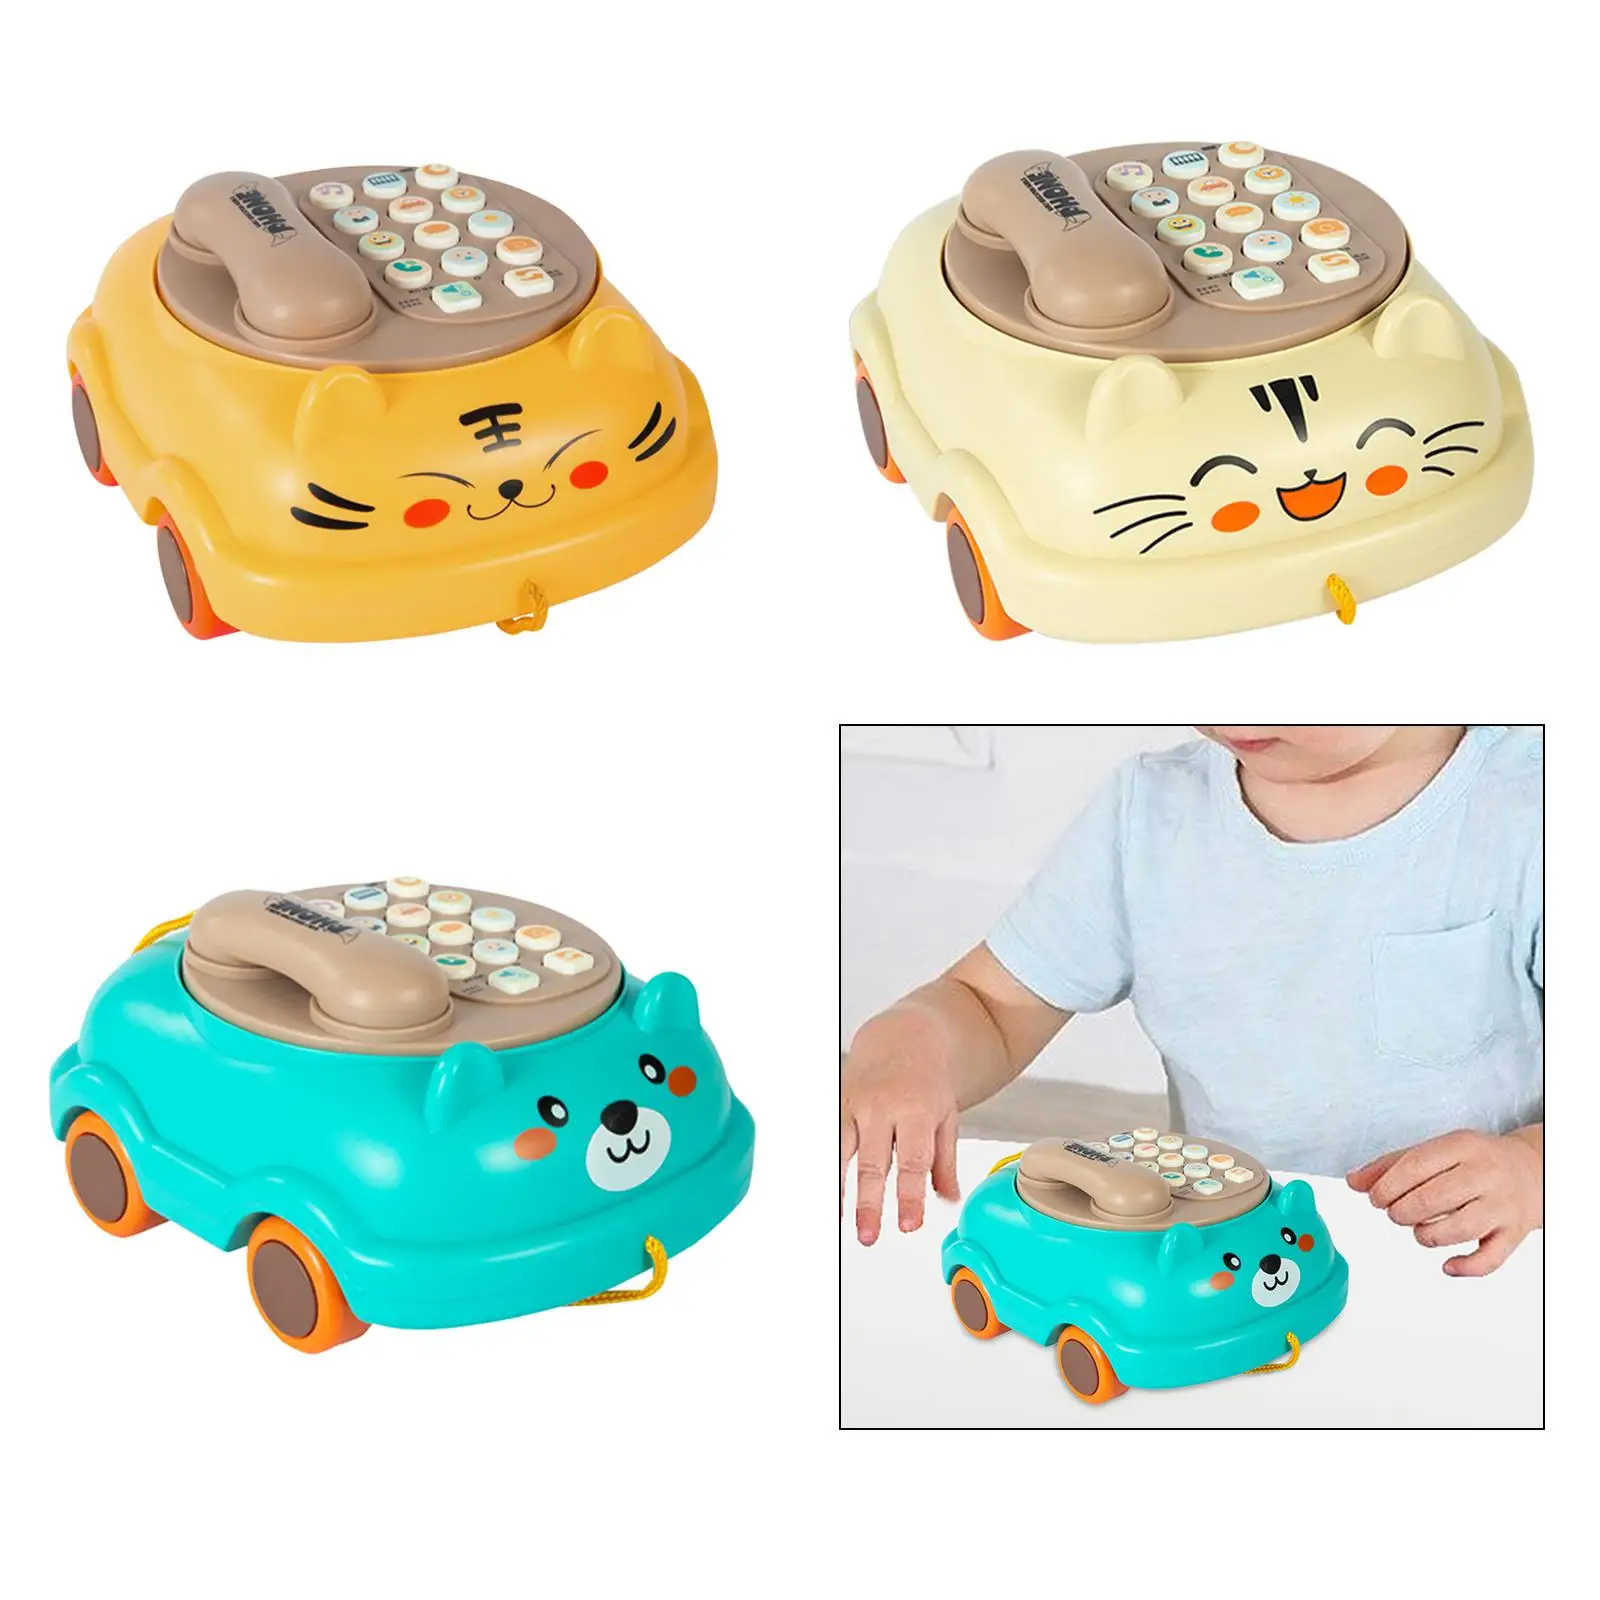 Telefon dla dzieci rozwój poznawczy zabawka światła fortepian wczesna zabawka edukacyjna telefony zabawka dla nauczanie edukacyjne dziewczynki w wieku przedszkolnym